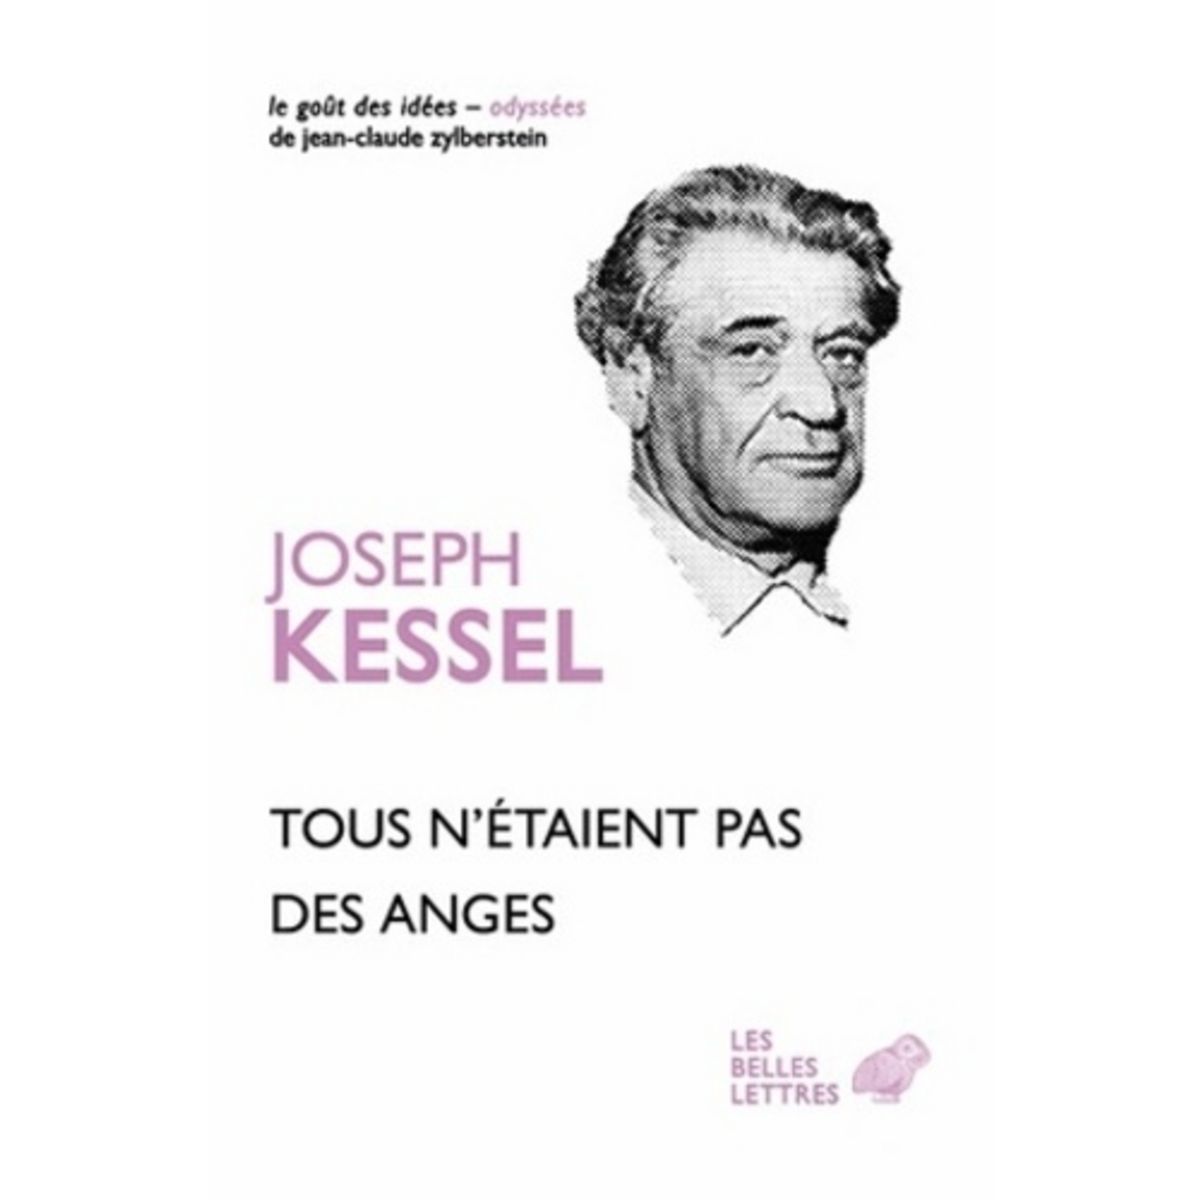  TOUS N'ETAIENT PAS DES ANGES, Kessel Joseph